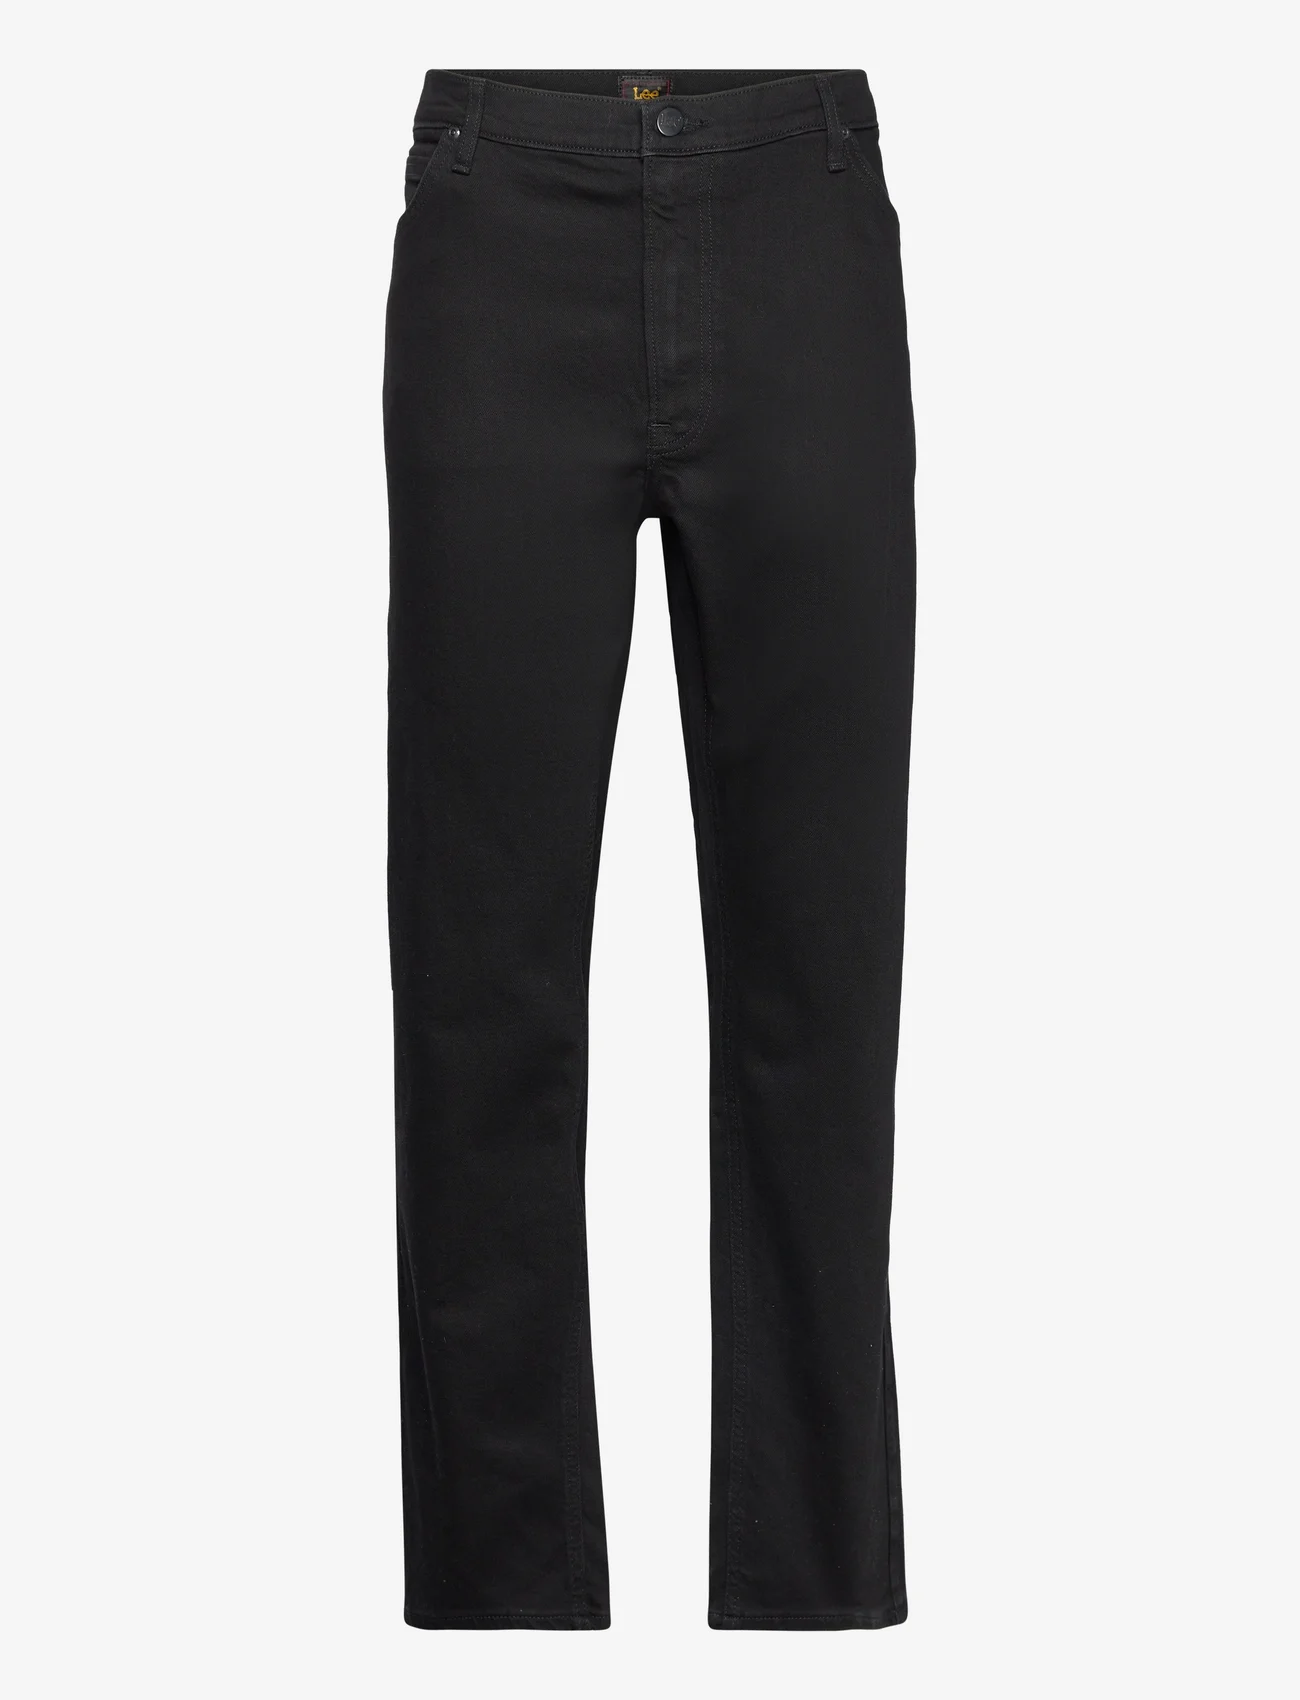 Lee Jeans - DAREN ZIP FLY - Įprasto kirpimo džinsai - black rinse - 0